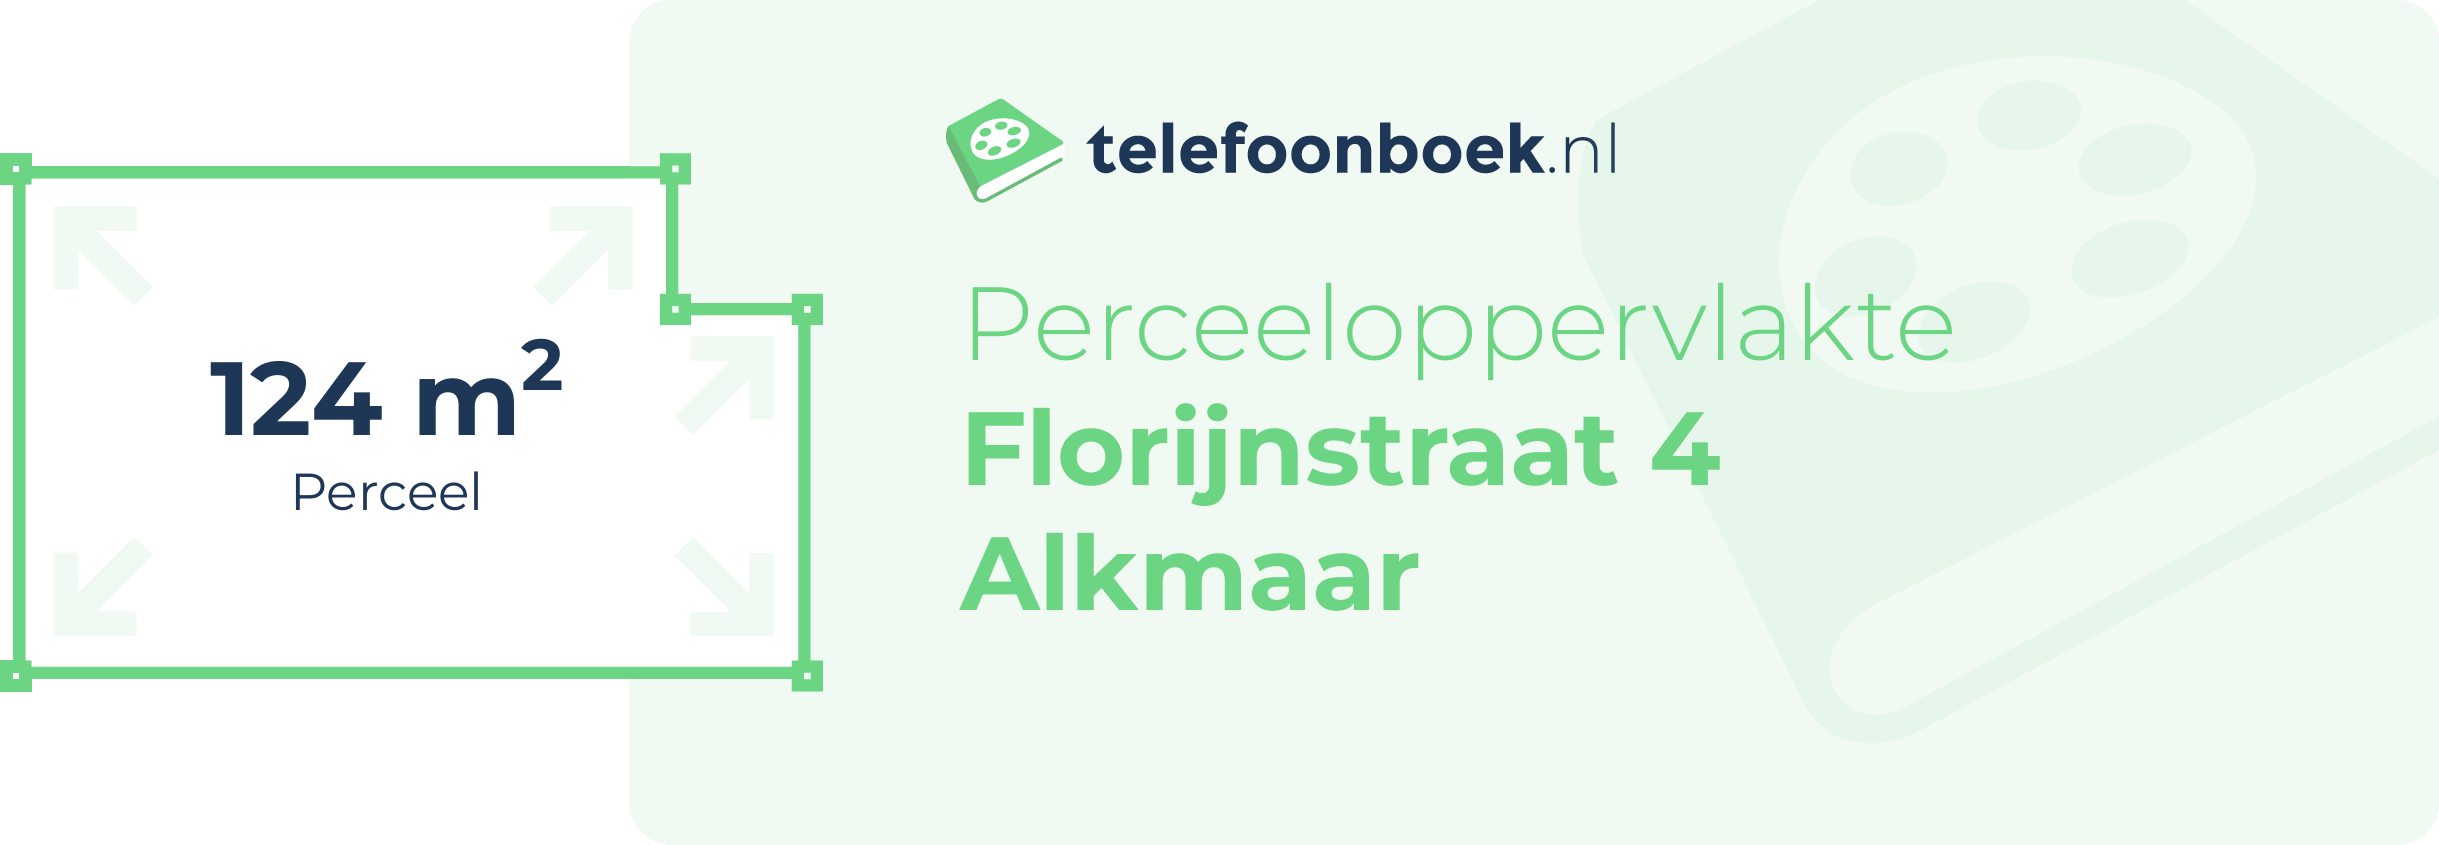 Perceeloppervlakte Florijnstraat 4 Alkmaar